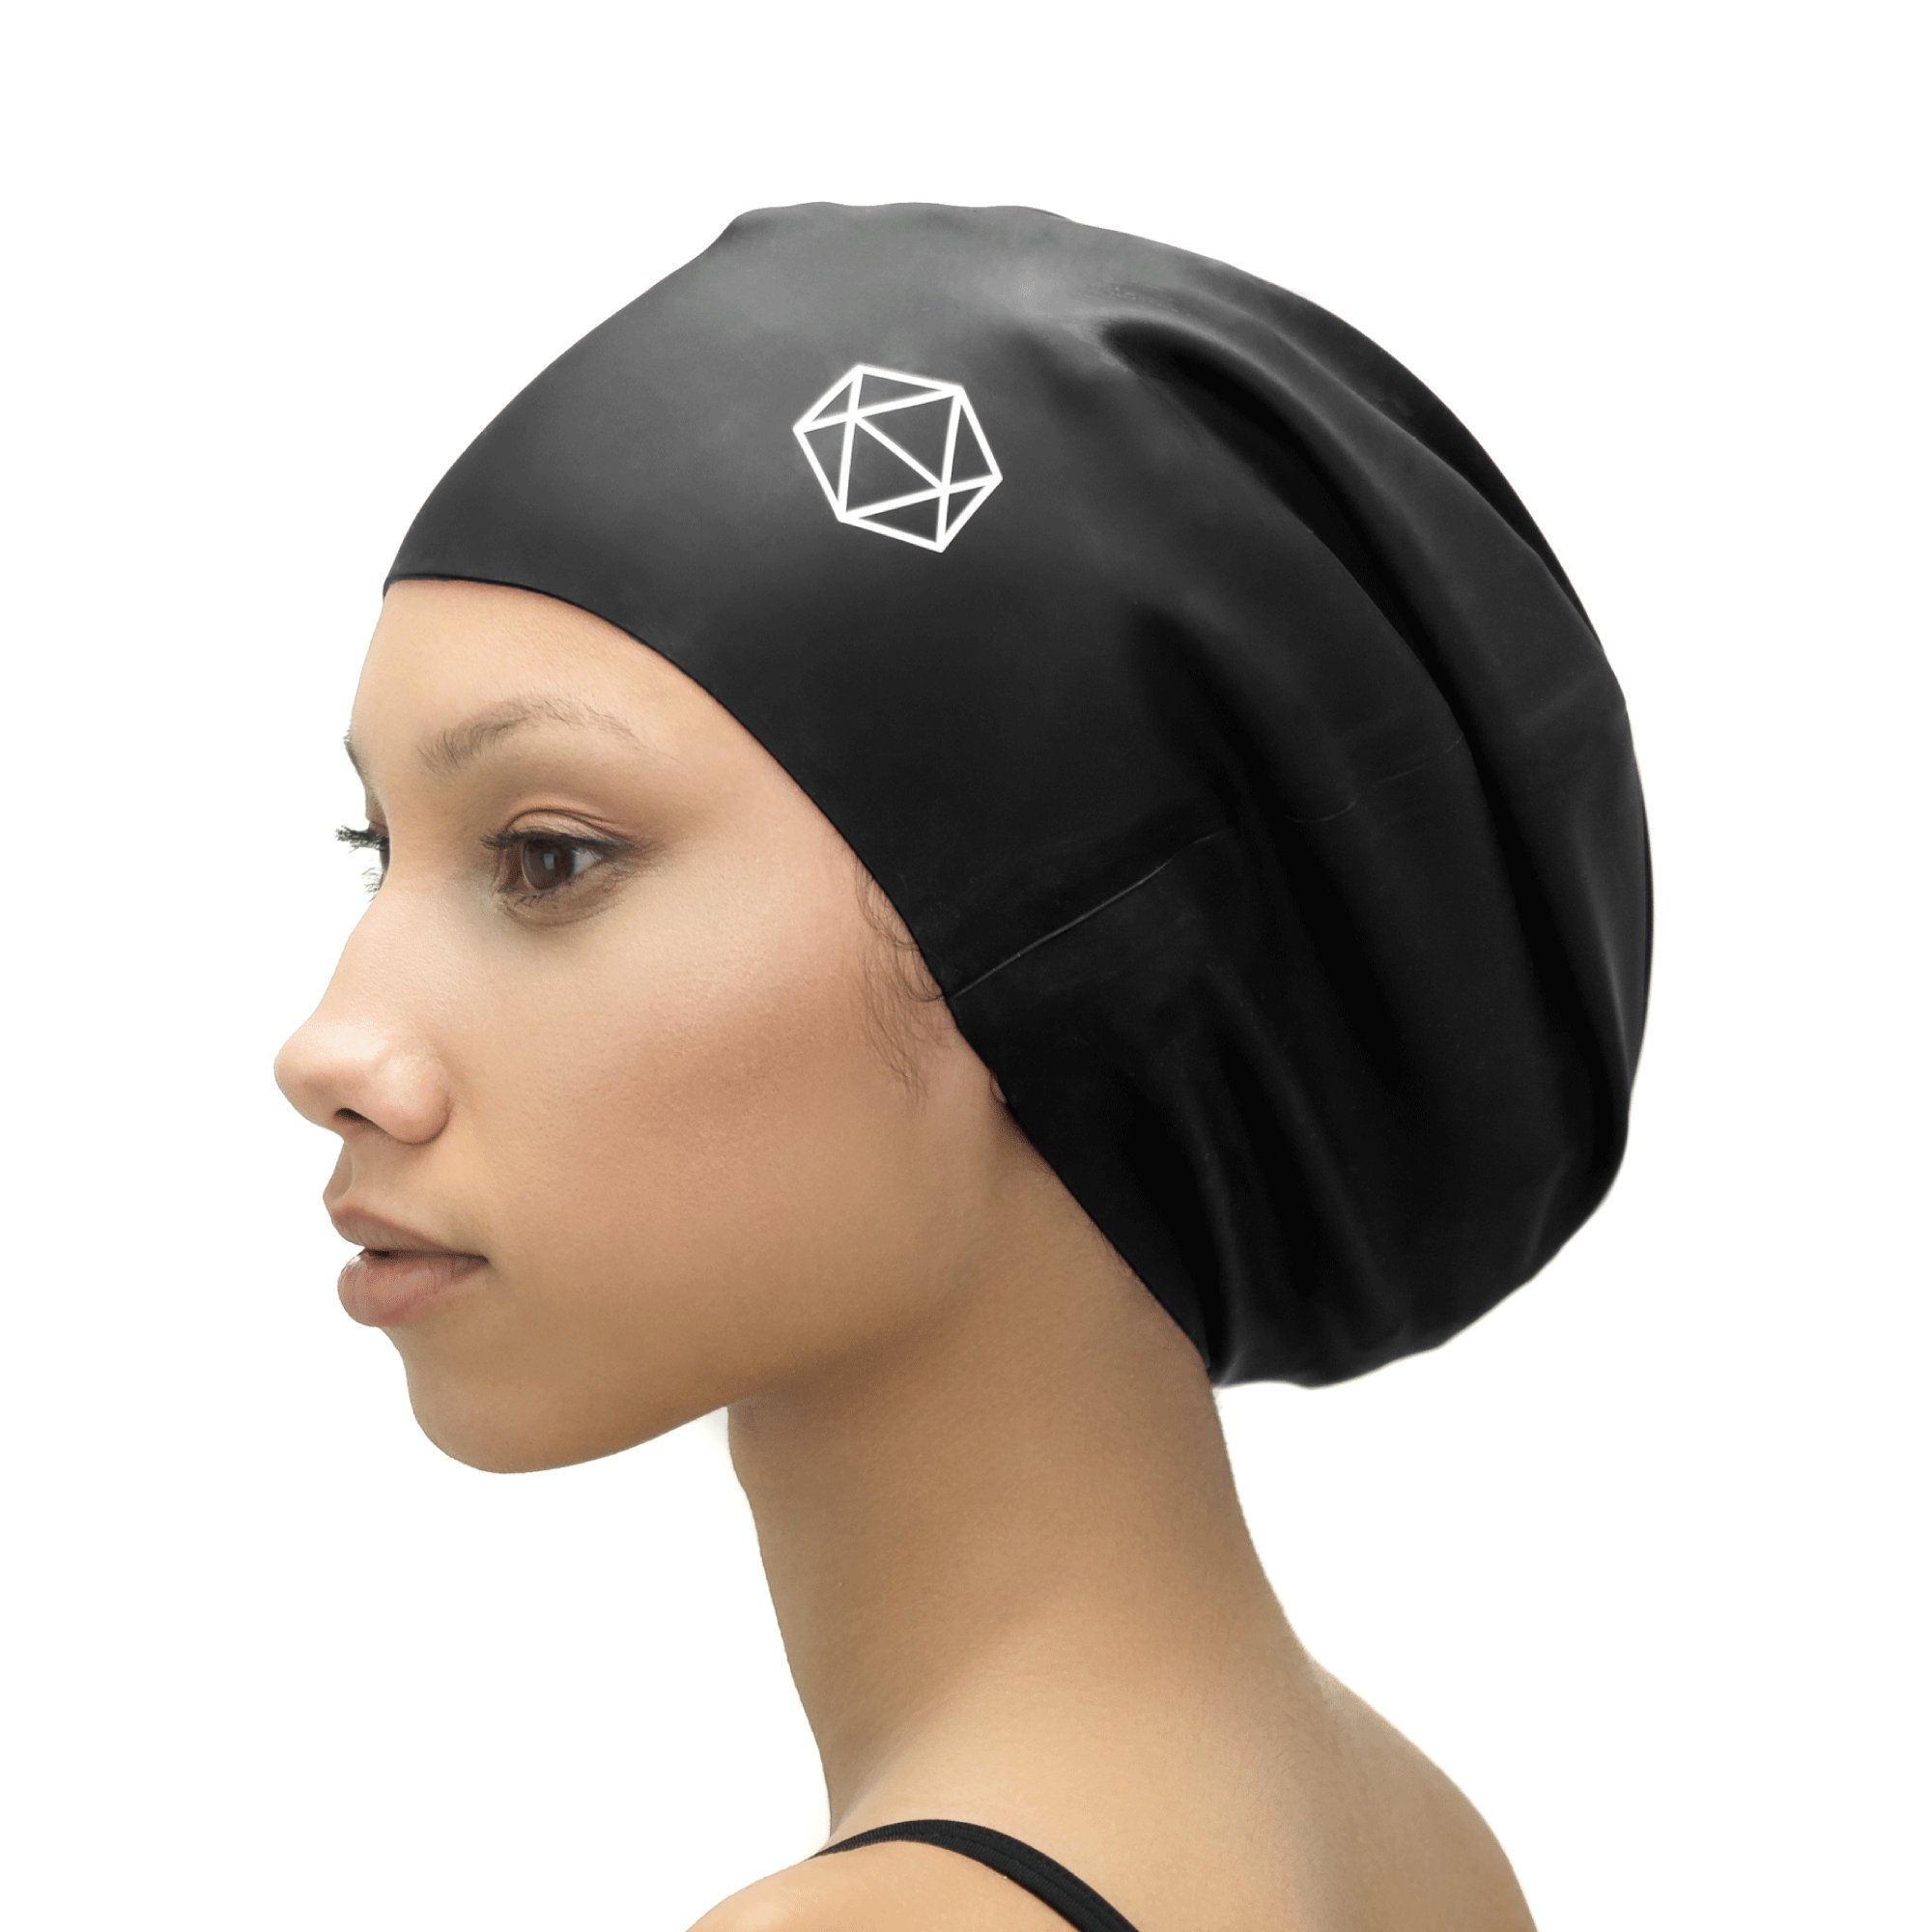 Acheter XL Swim Cap for Locs - bonnet de bain bonnet de bain pour dreadlocks dreads afros rasta tresses extensions tresses